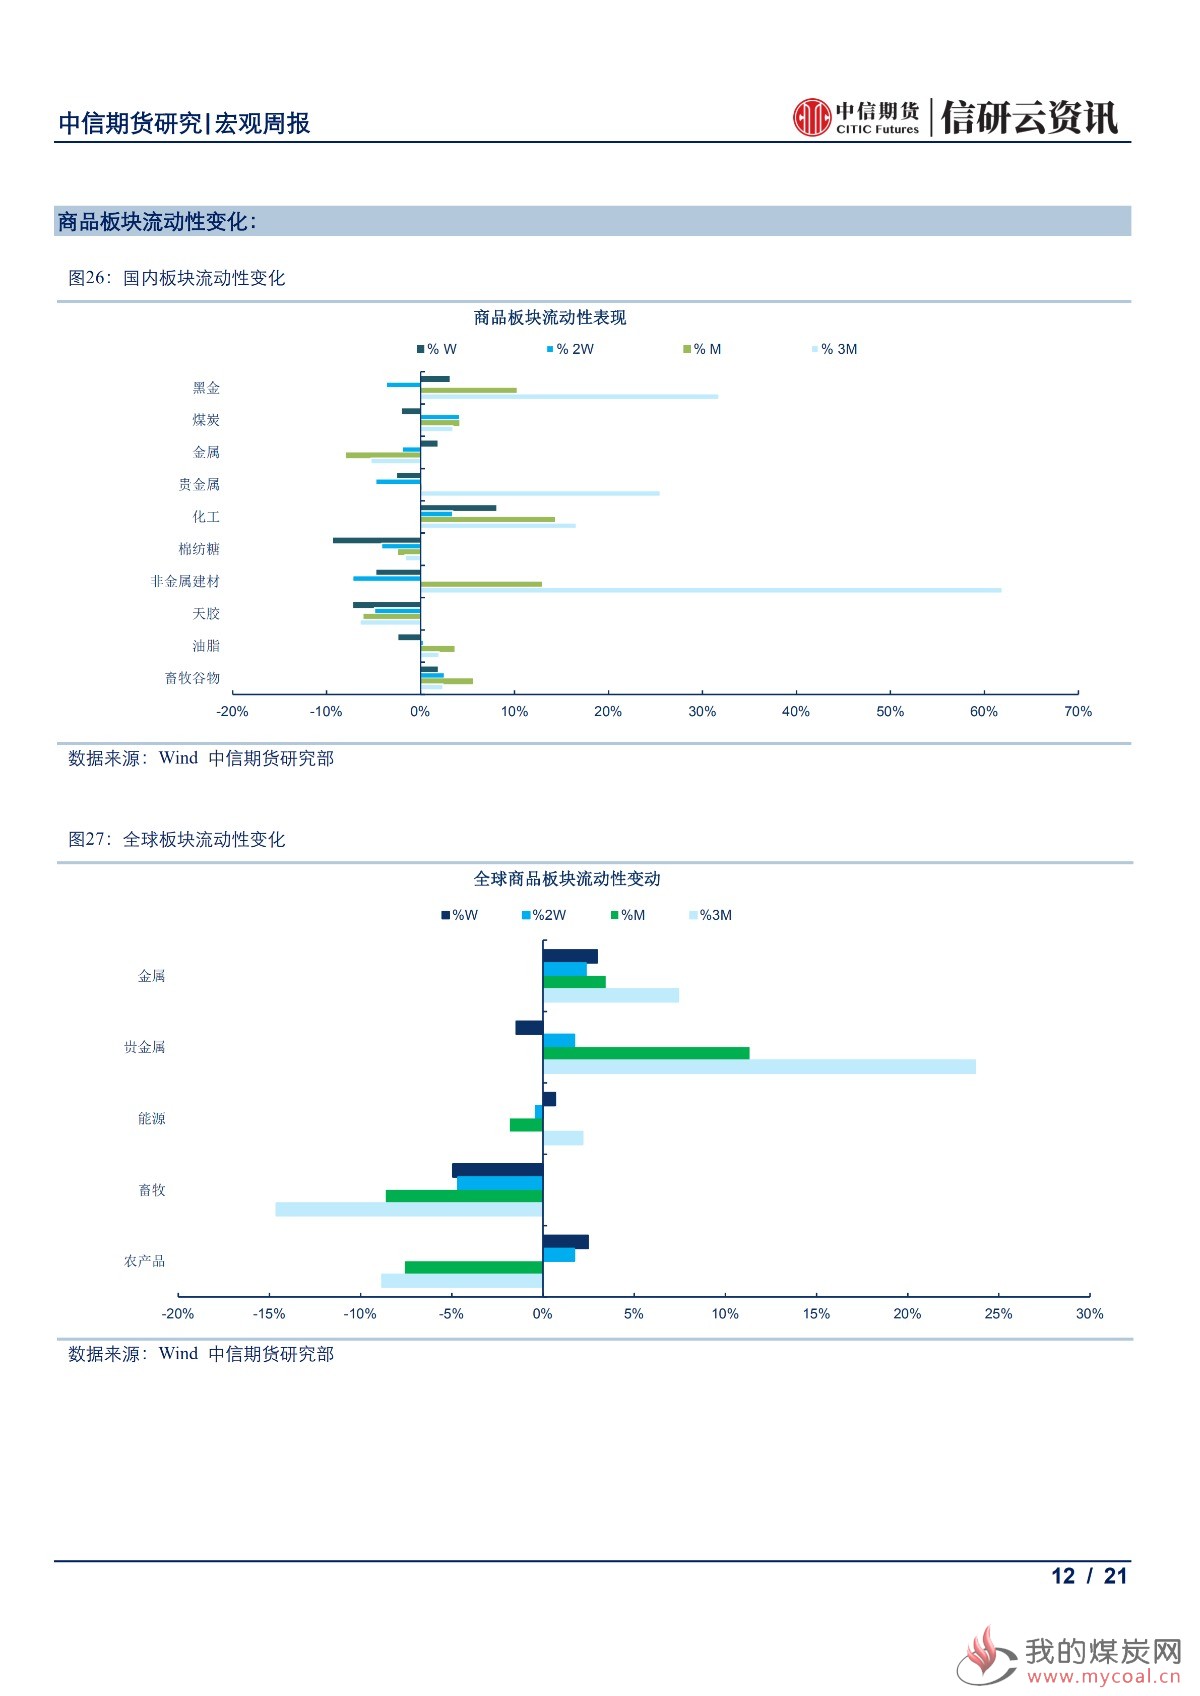 【中信期货宏观】全球央行鸽派倾向更甚 本周市场静待中国6月经济数据出炉——周报20190715_11